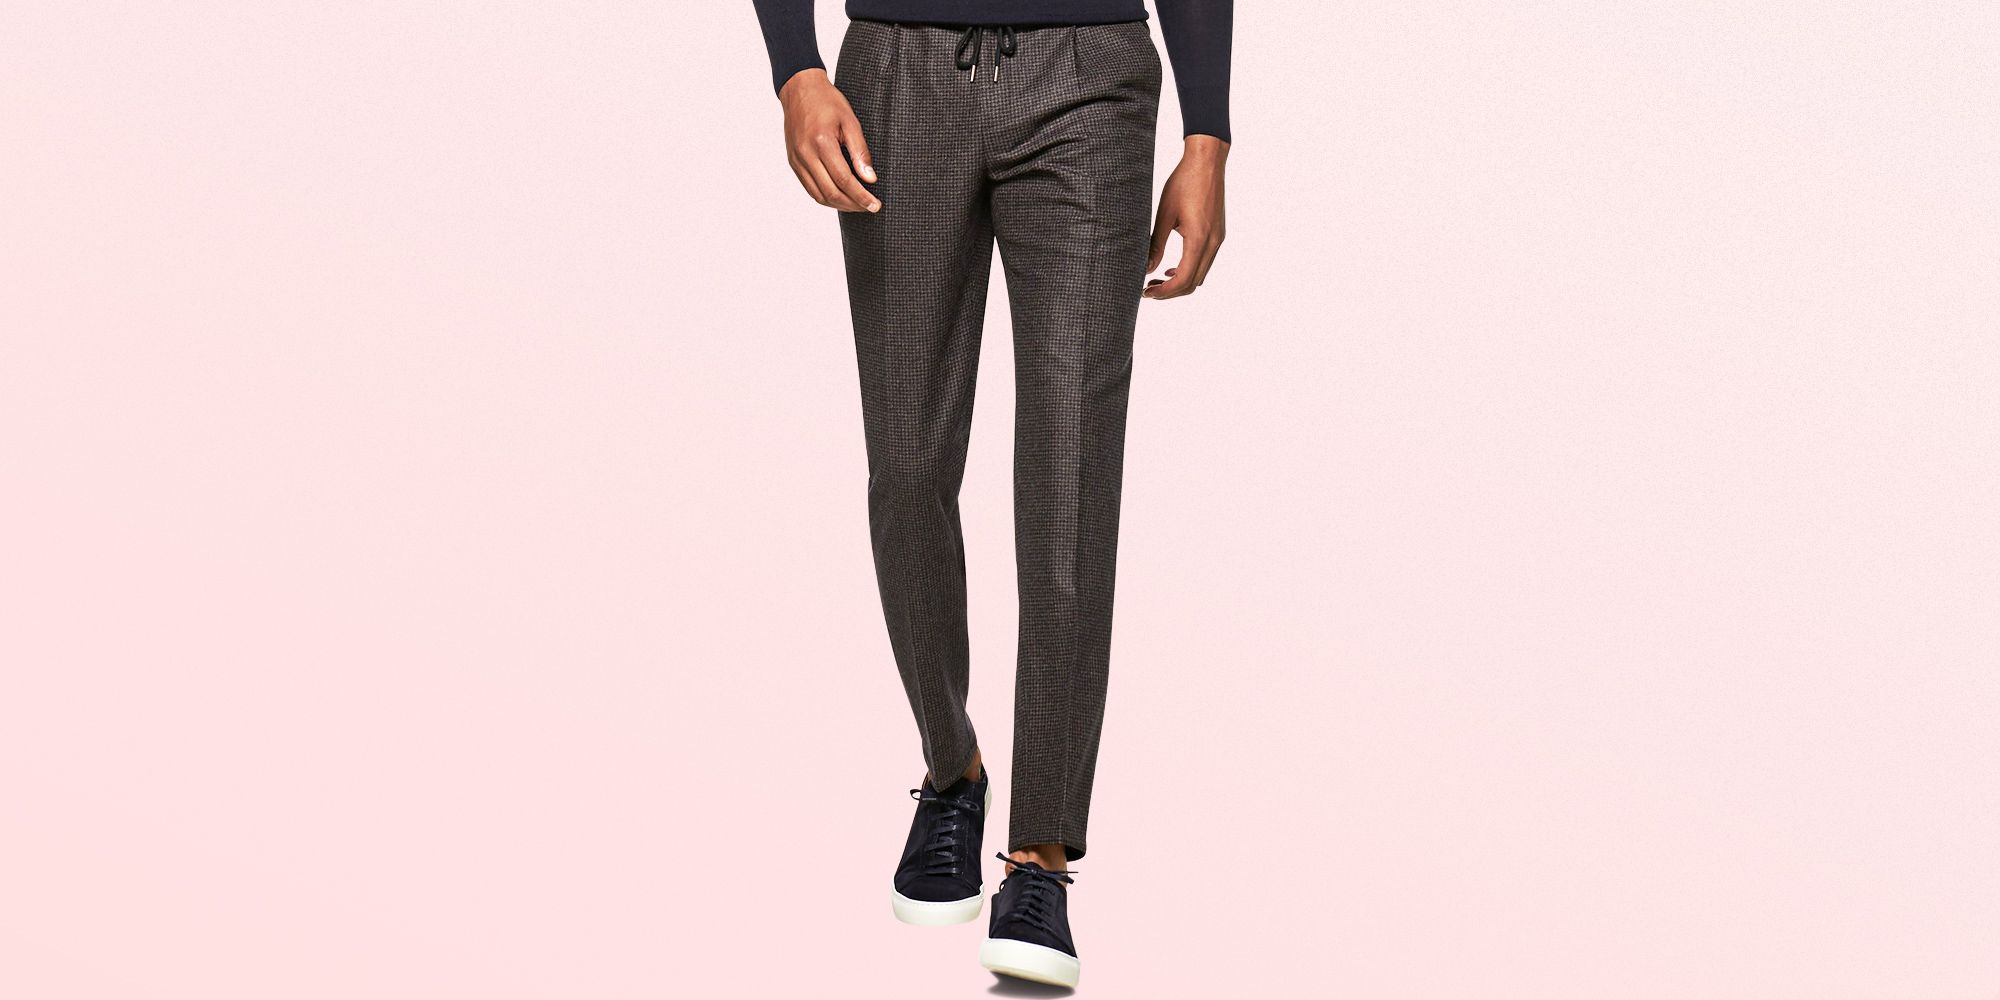 Wellington Jersey Pants check pattern business style Fashion Trousers Jersey Pants 